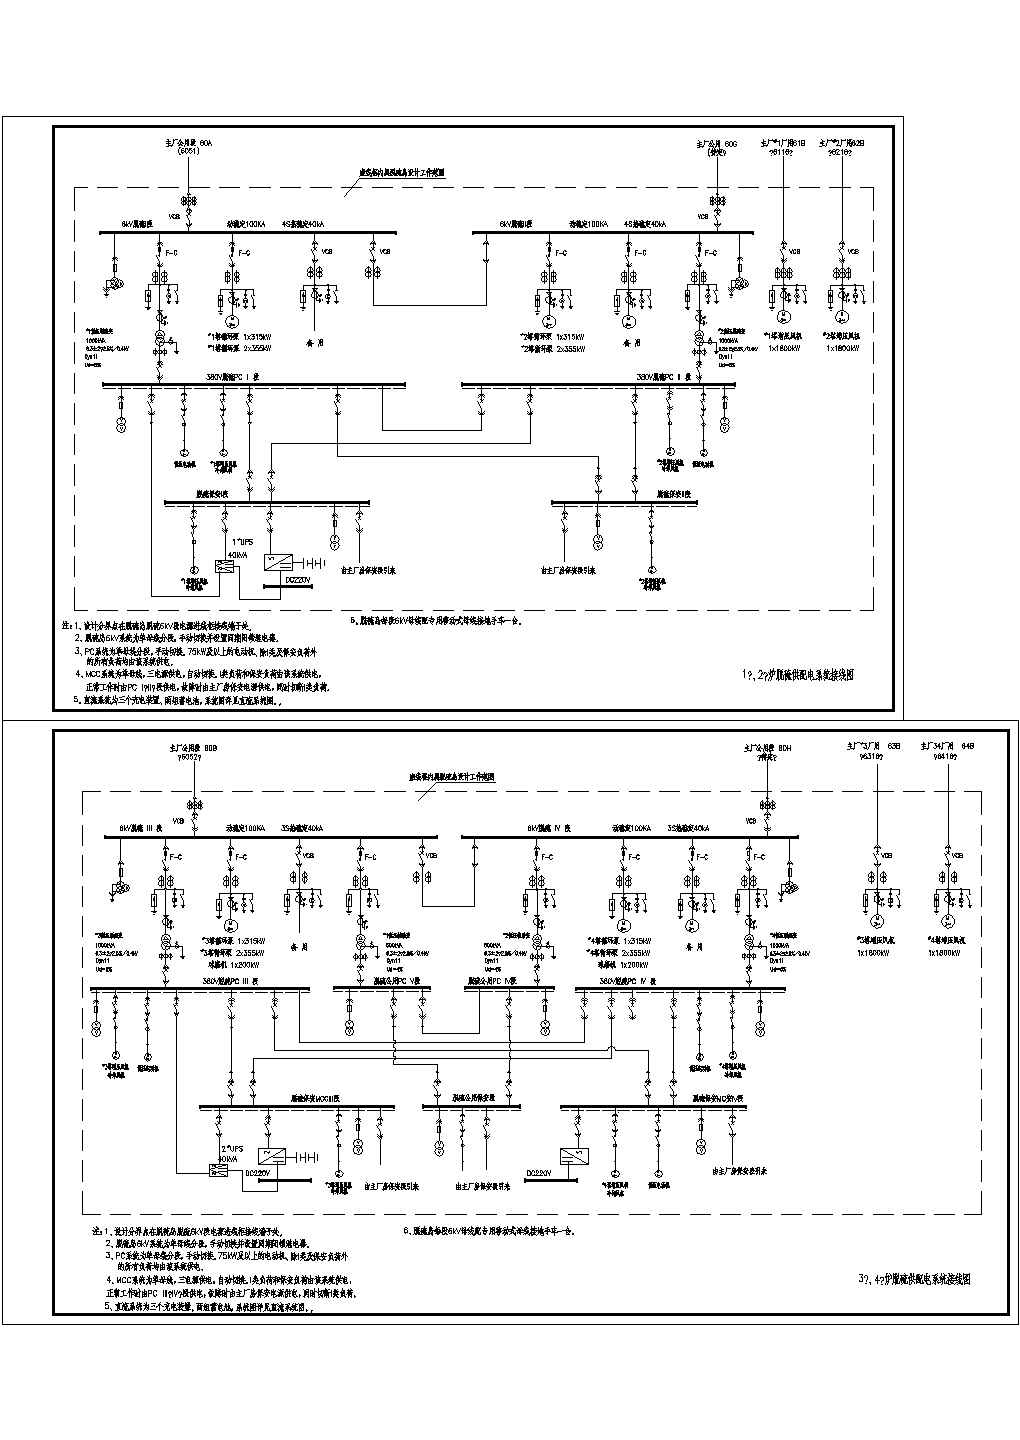 炉脱硫供配电系统接线图.